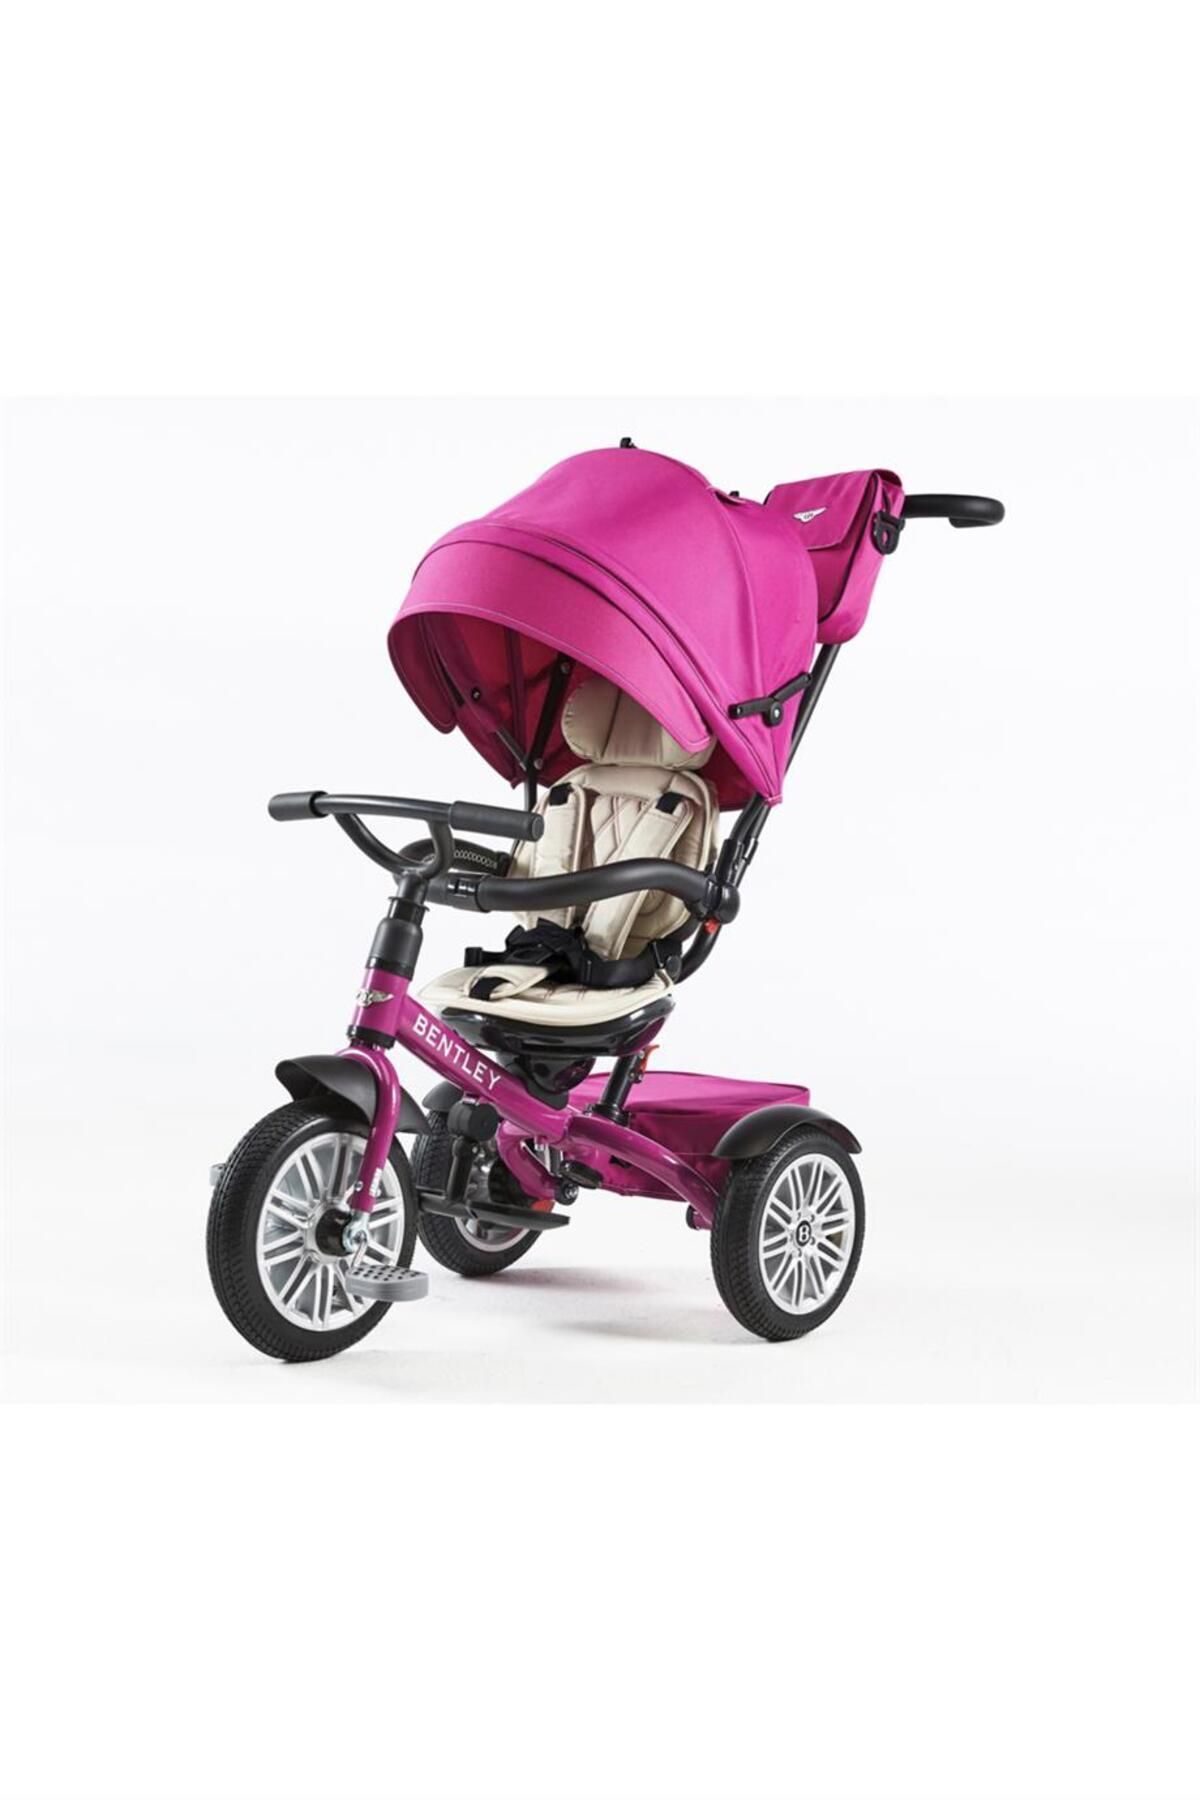 Bentley Trike Üç Tekerlekli Bebek&çocuk Bisikleti, Çift Yönlü Ebeveyn Kontrollü, 6 Ay - 6 Yaş